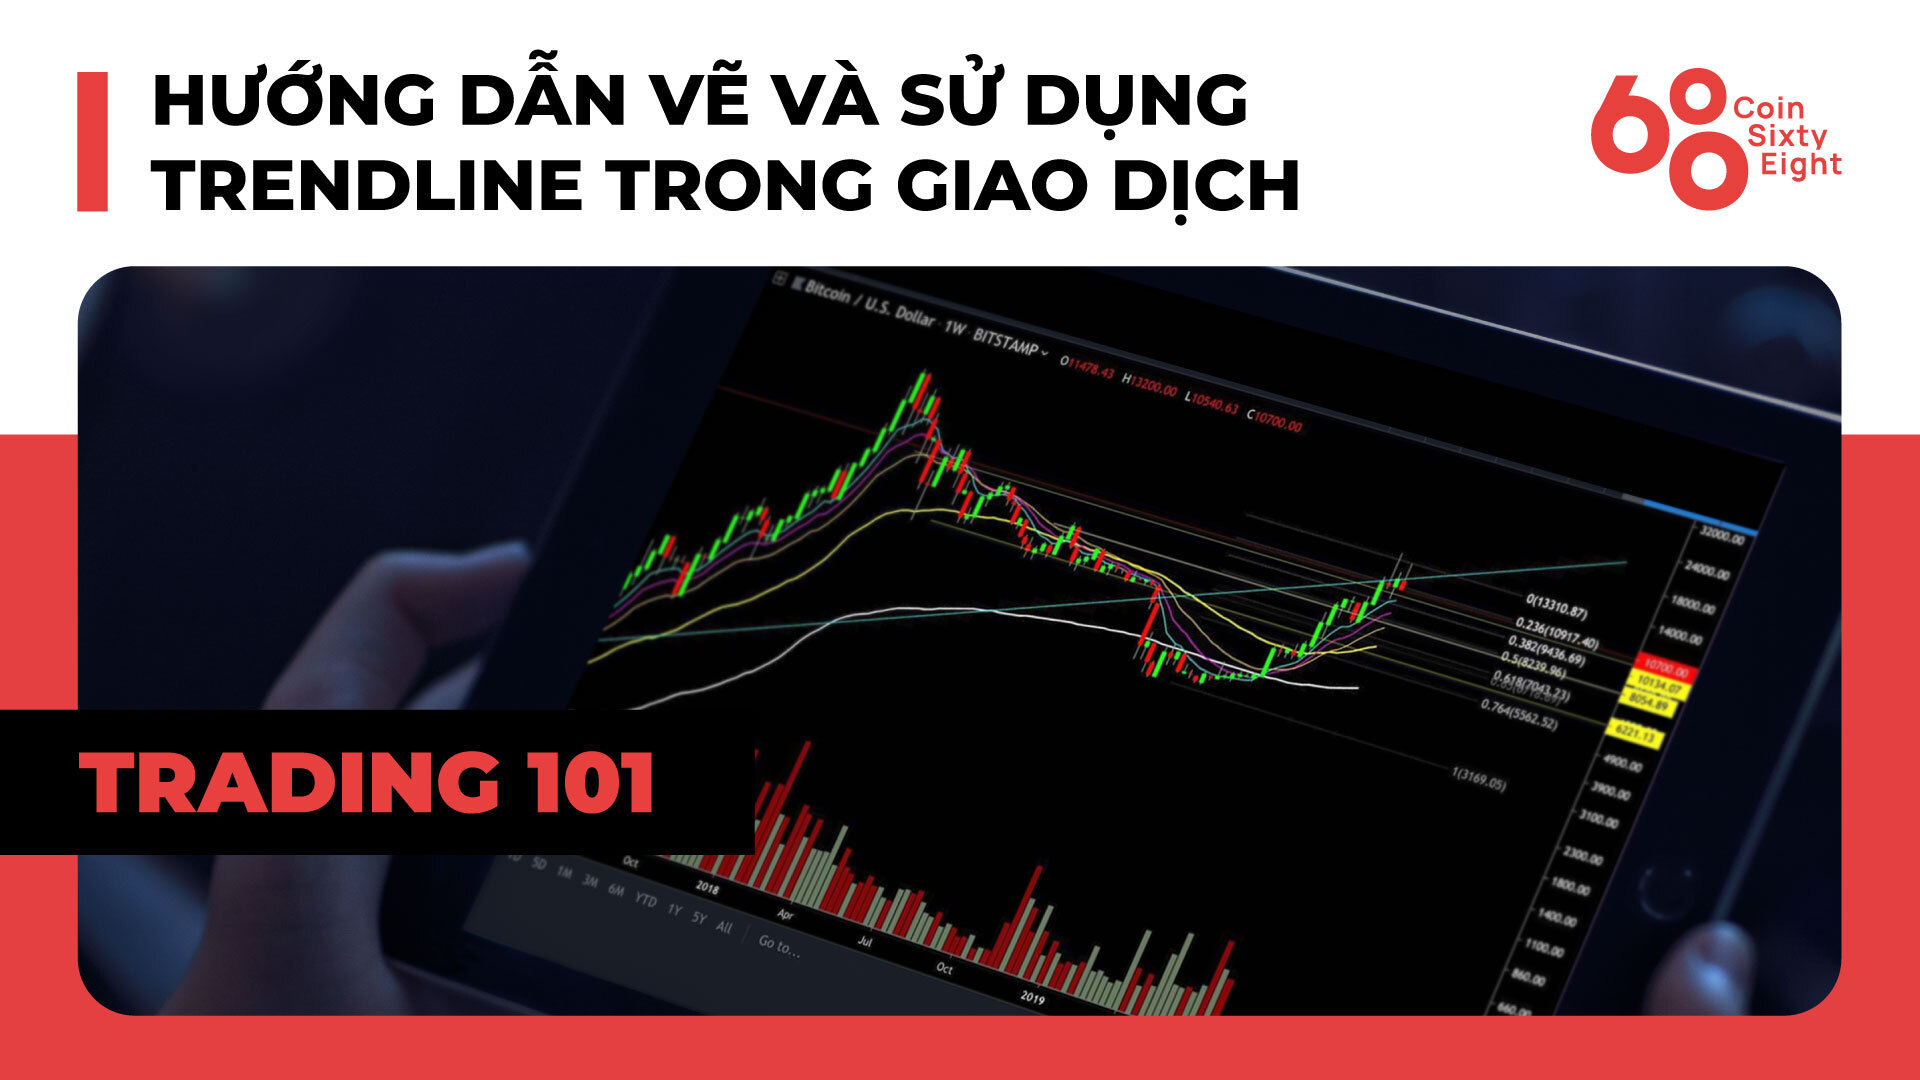 Lớp Giao Dịch 101 Price Action Trading phần 16  Hướng Dẫn Vẽ Và Sử Dụng Trendline Trong Giao Dịch